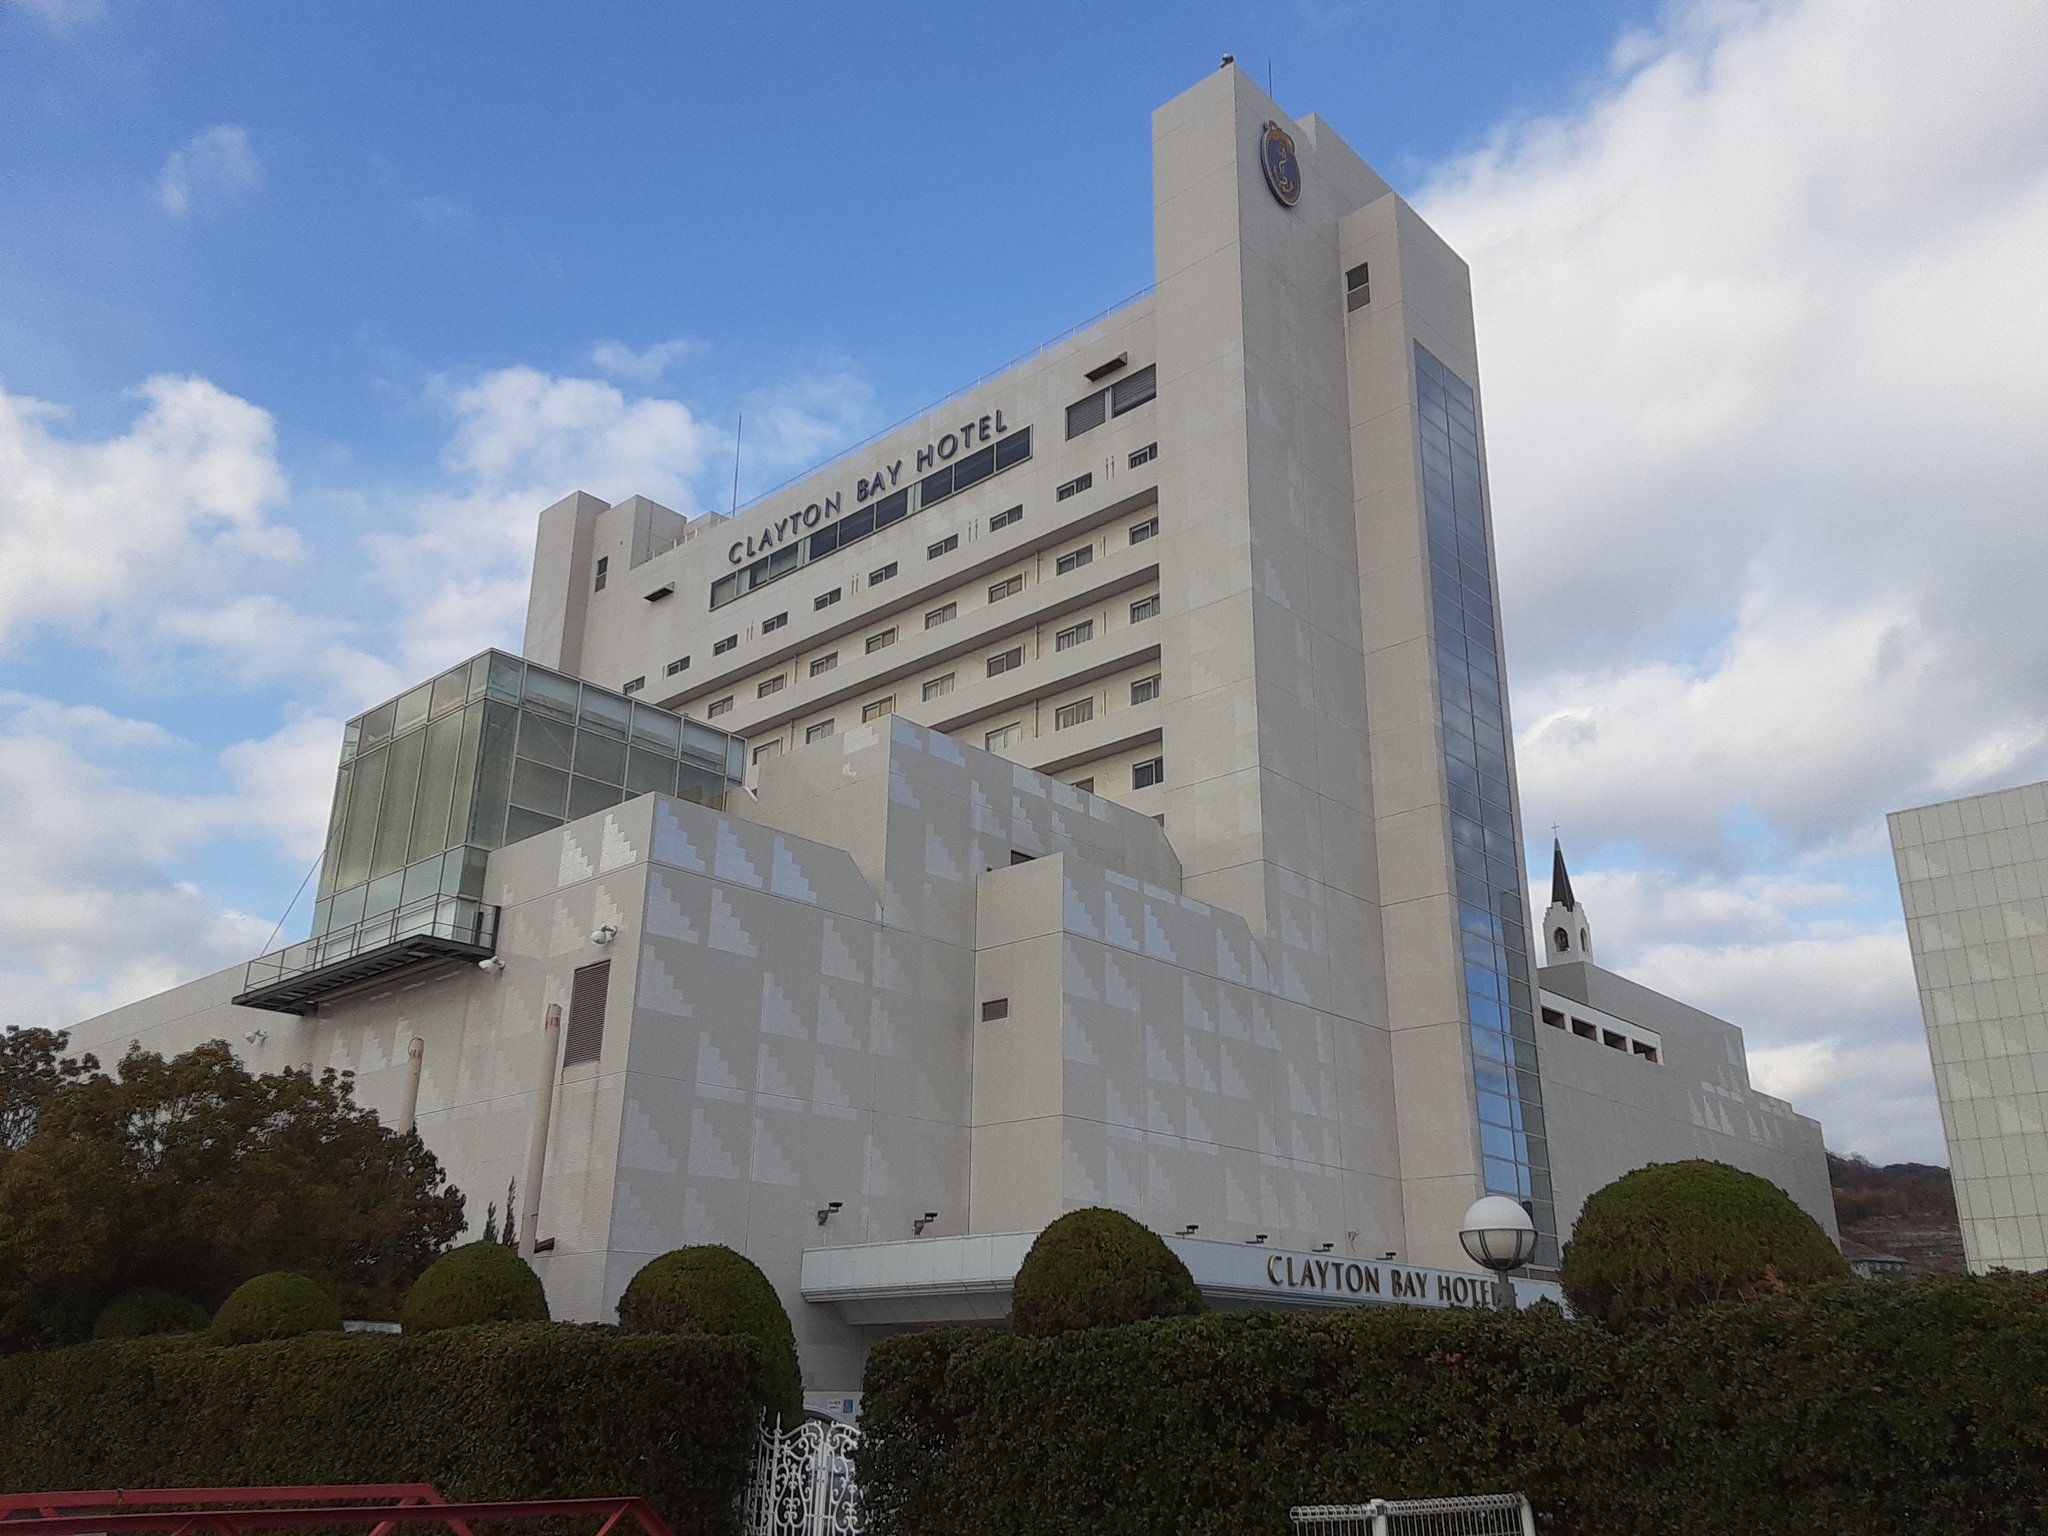 まかみし 仁義なき戦いの美能幸三の建てたクレイトンベイホテルに泊まった 広島県でも有数の高級ホテルだ 広い部屋と豪華な食事に感動する さすが美能組組長